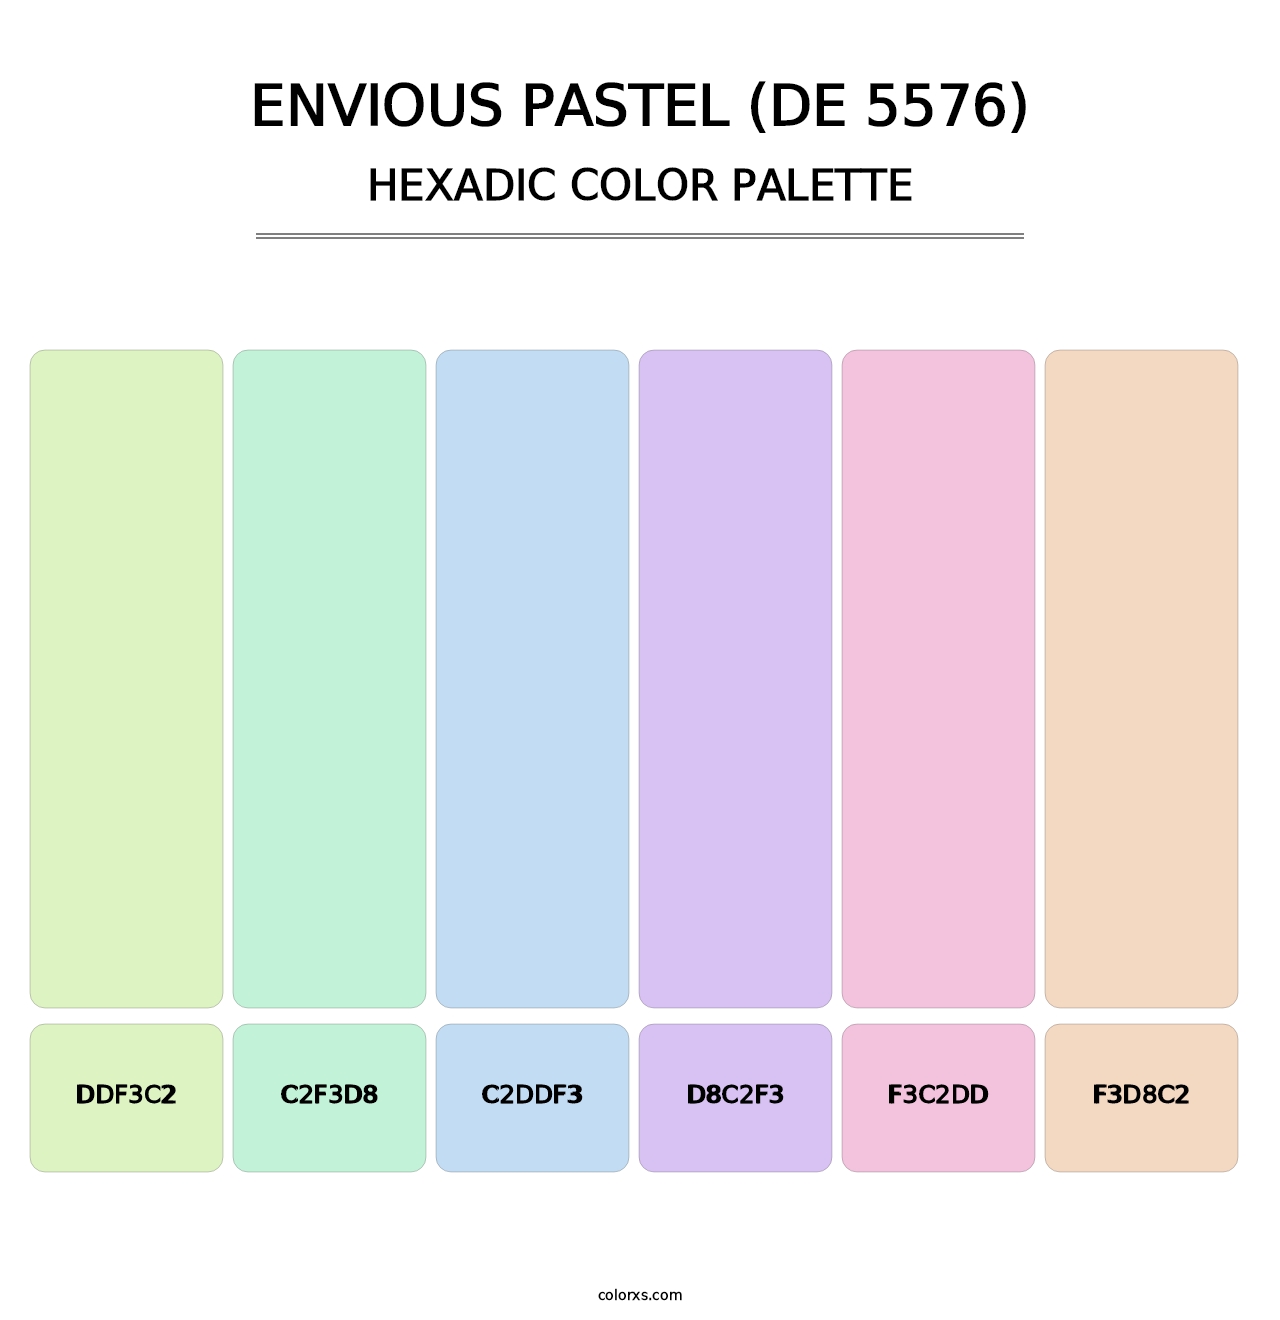 Envious Pastel (DE 5576) - Hexadic Color Palette